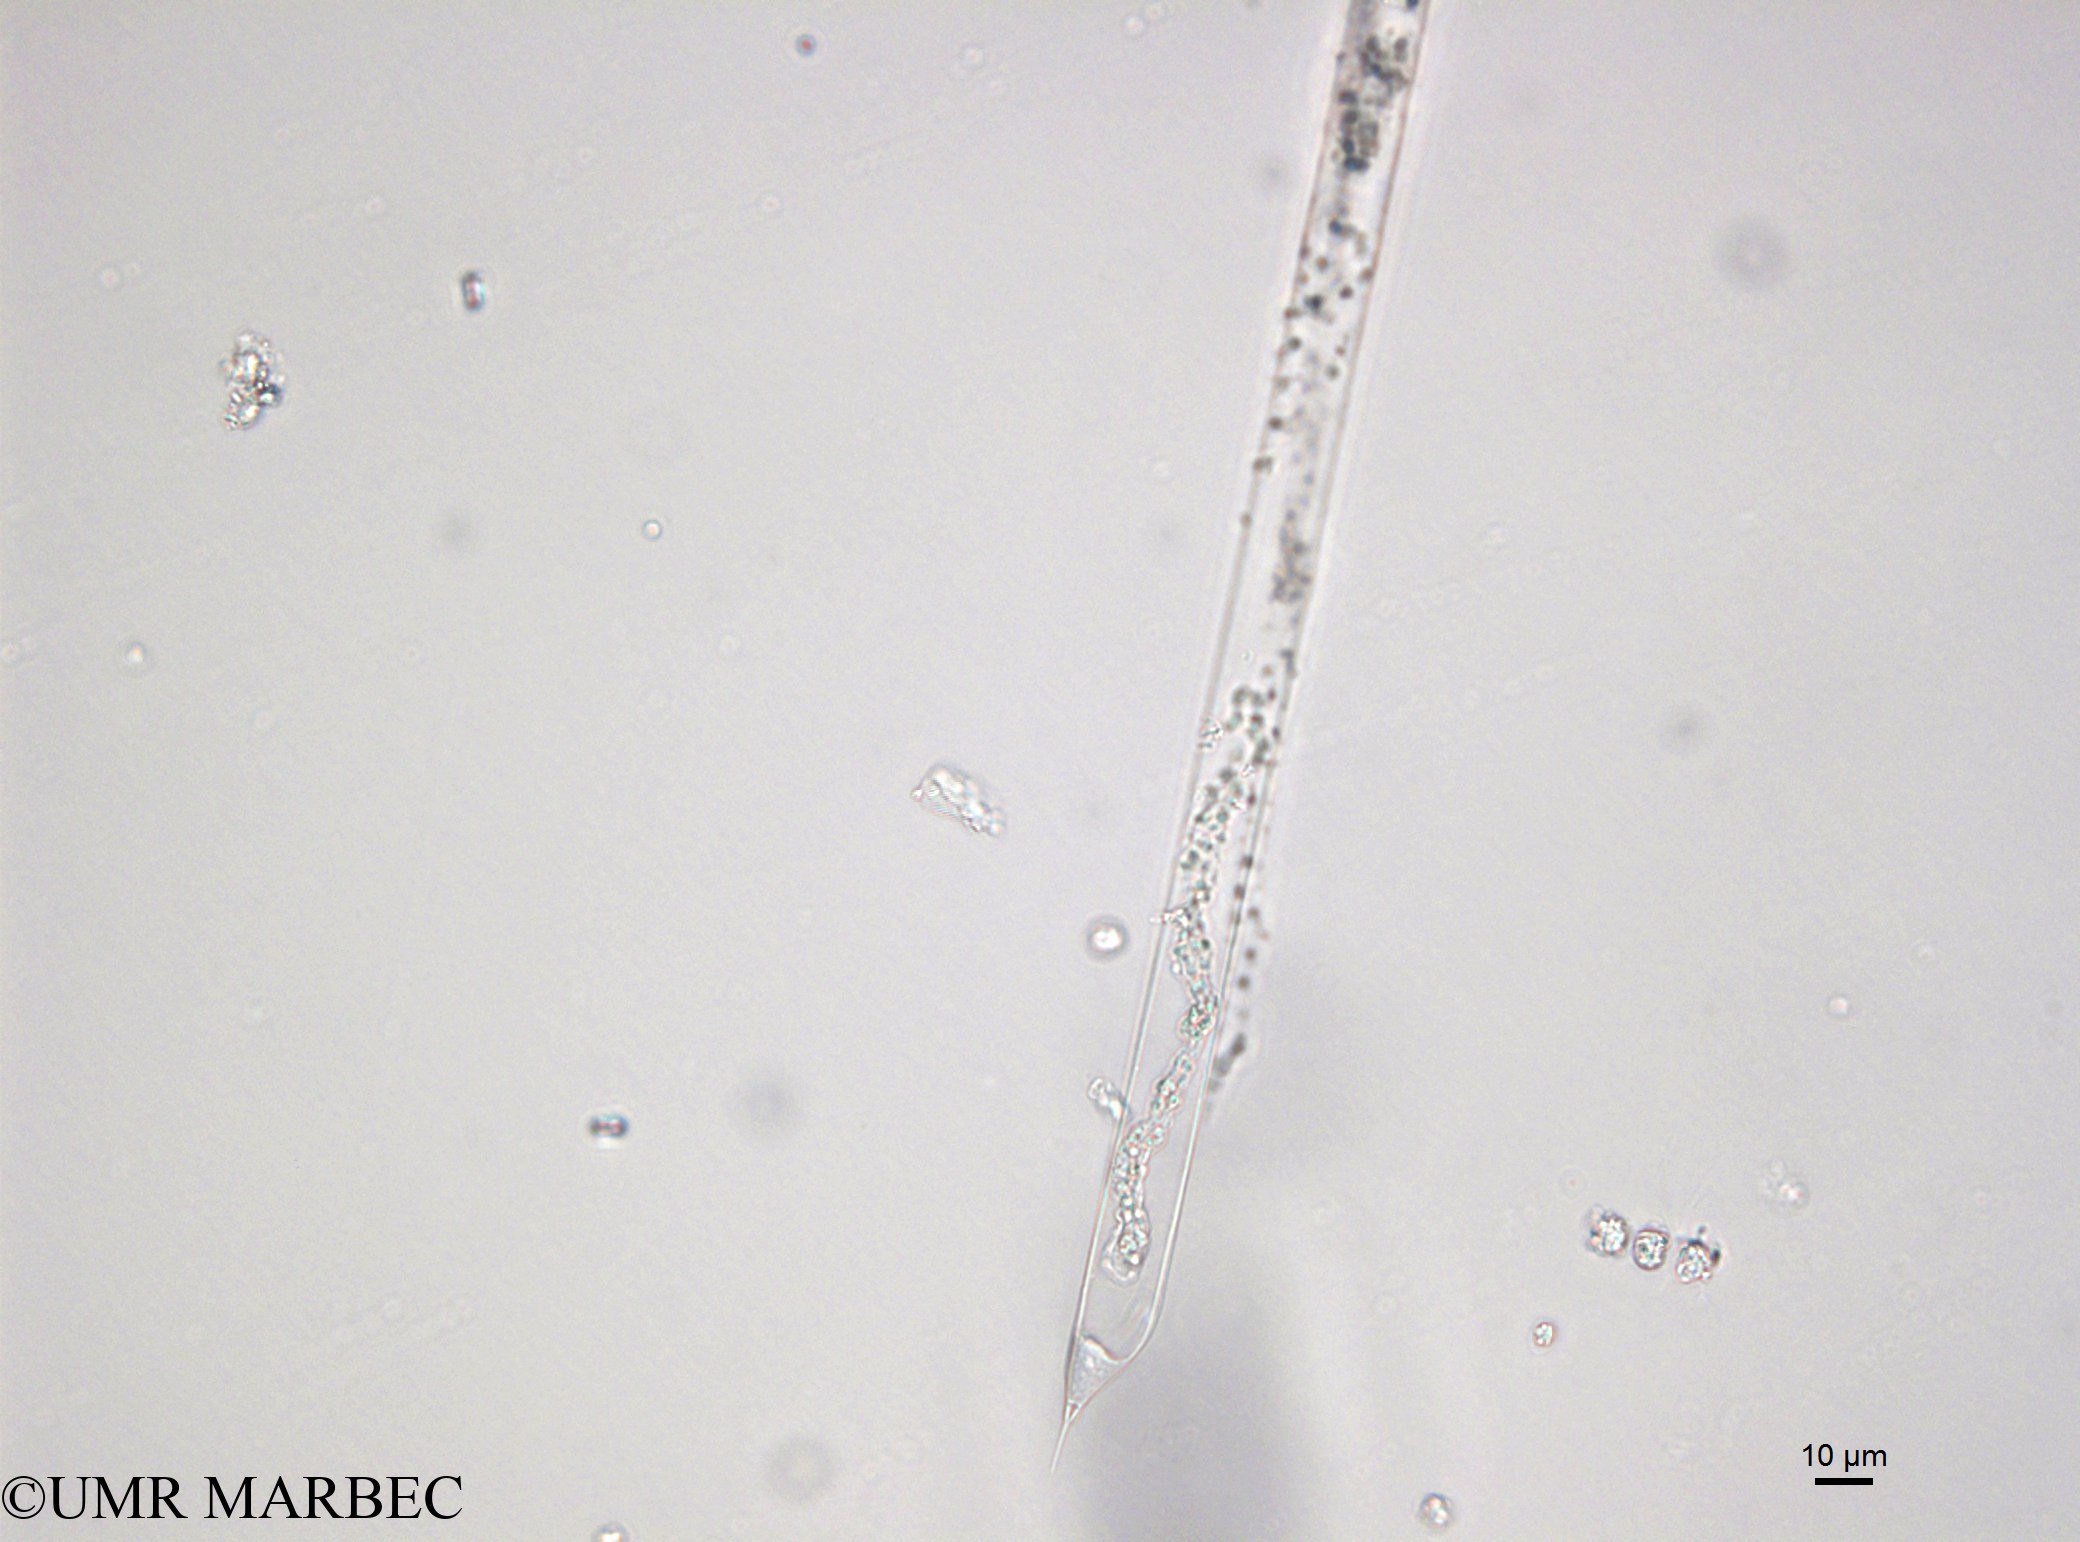 phyto/Bizerte/bizerte_bay/RISCO April 2014/Rhizosolenia imbricata (141216_001_ovl)(copy).jpg